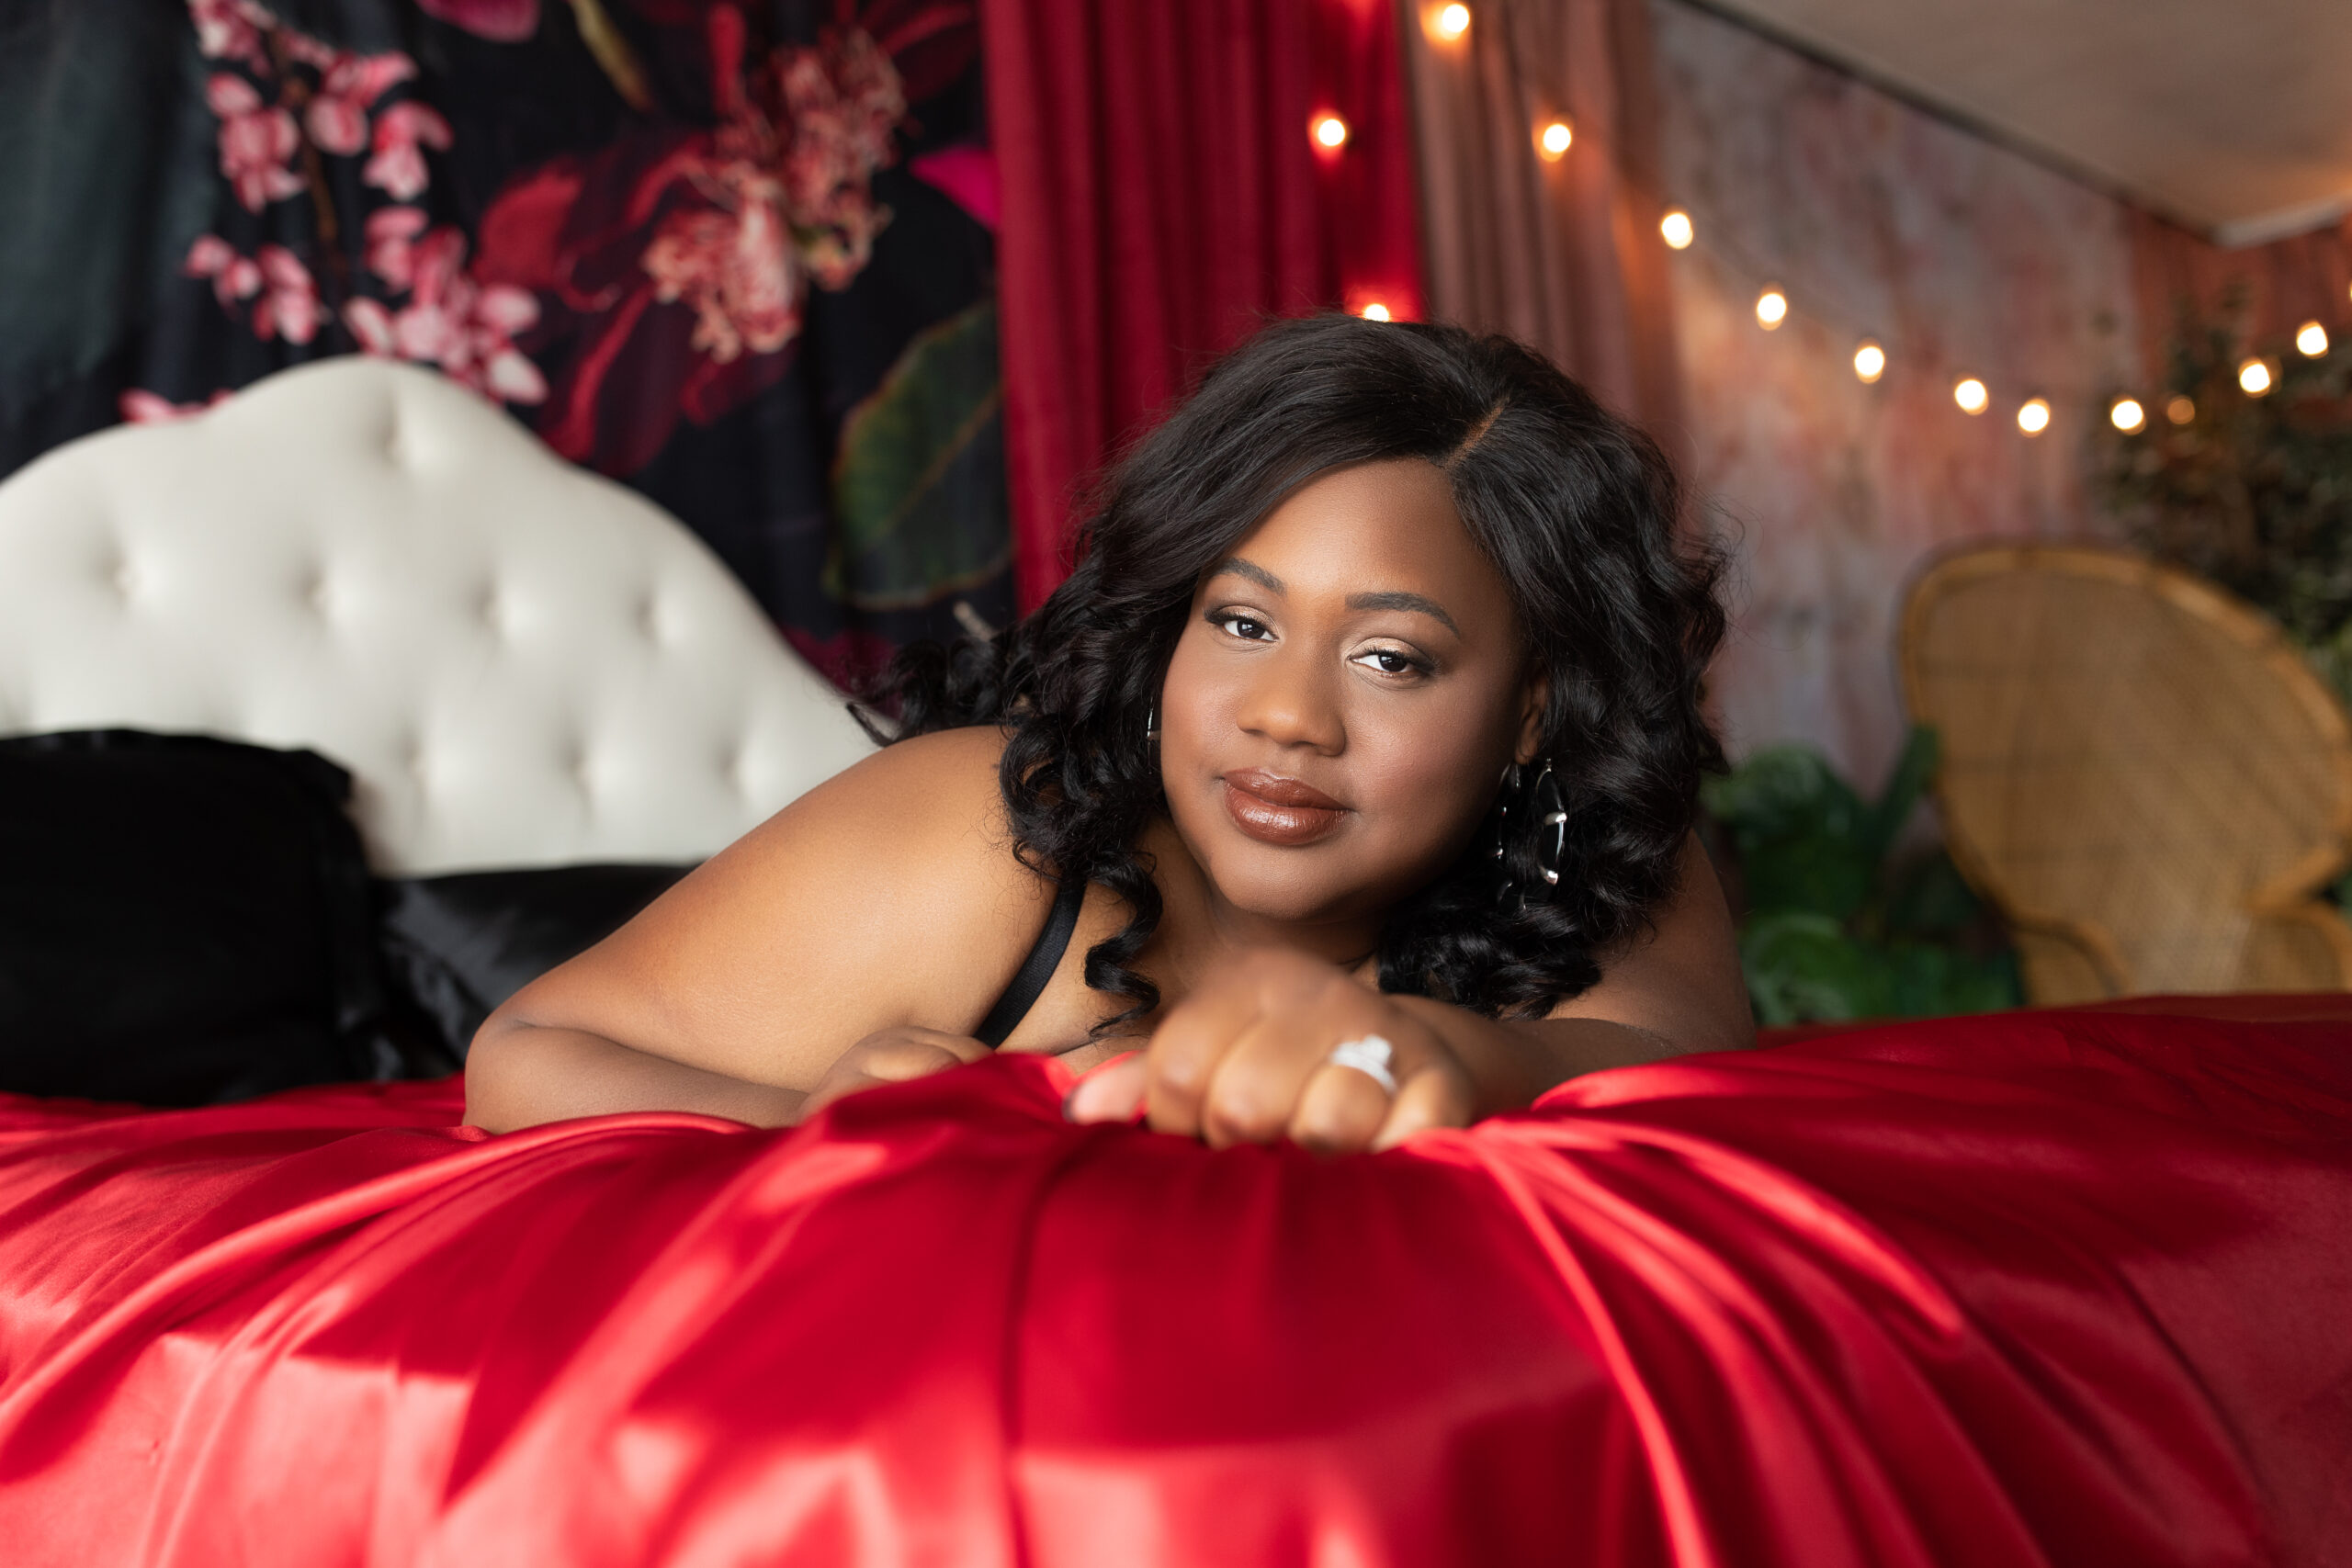 Red satin sheet boudoir, sexy photos, the creative shutter photographer